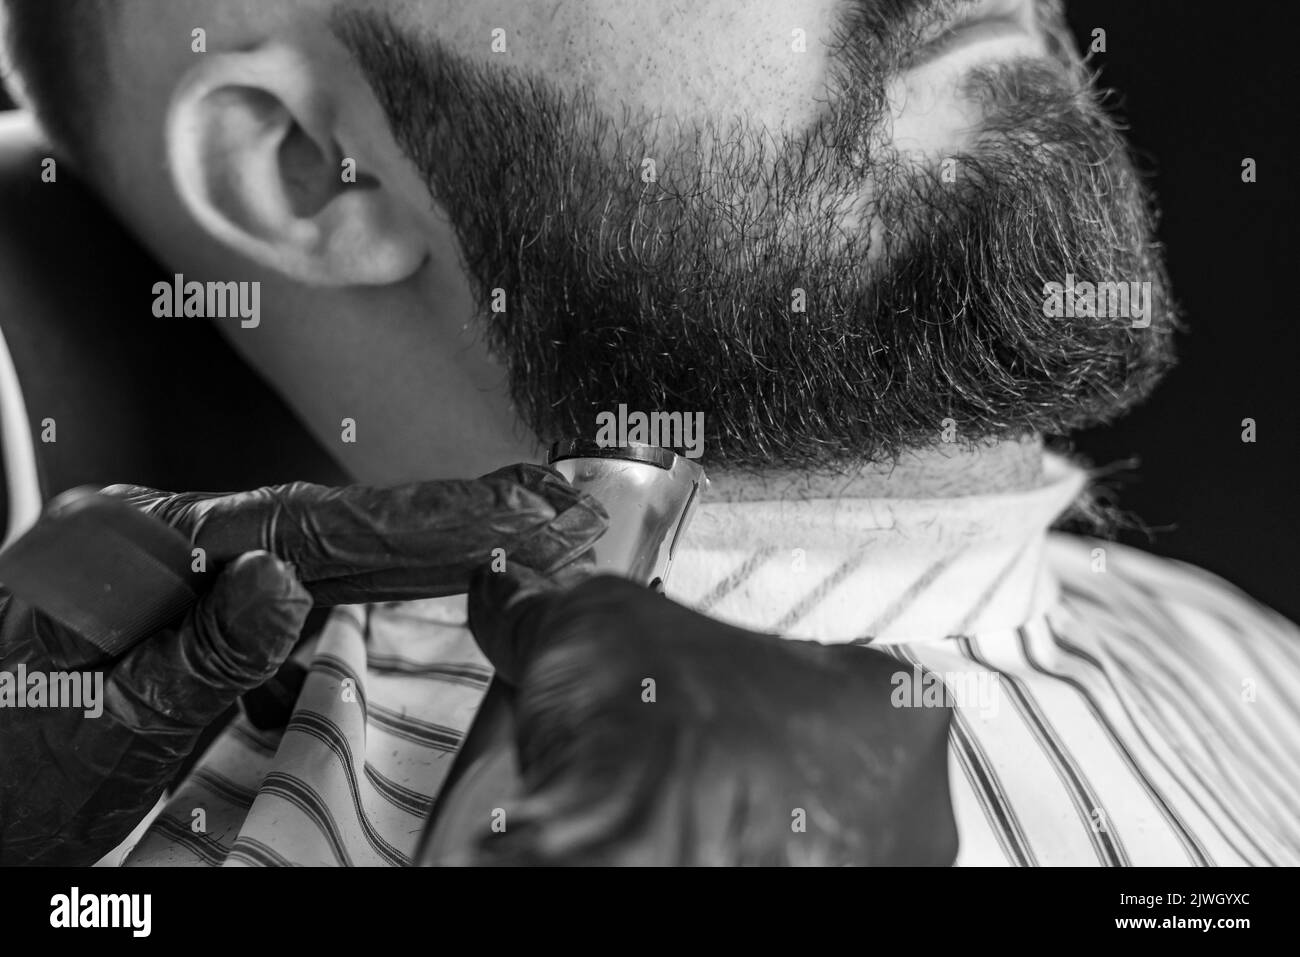 Homme taillé sa barbe avec un rasoir électrique dans un salon de coiffure. Image en noir et blanc. Banque D'Images